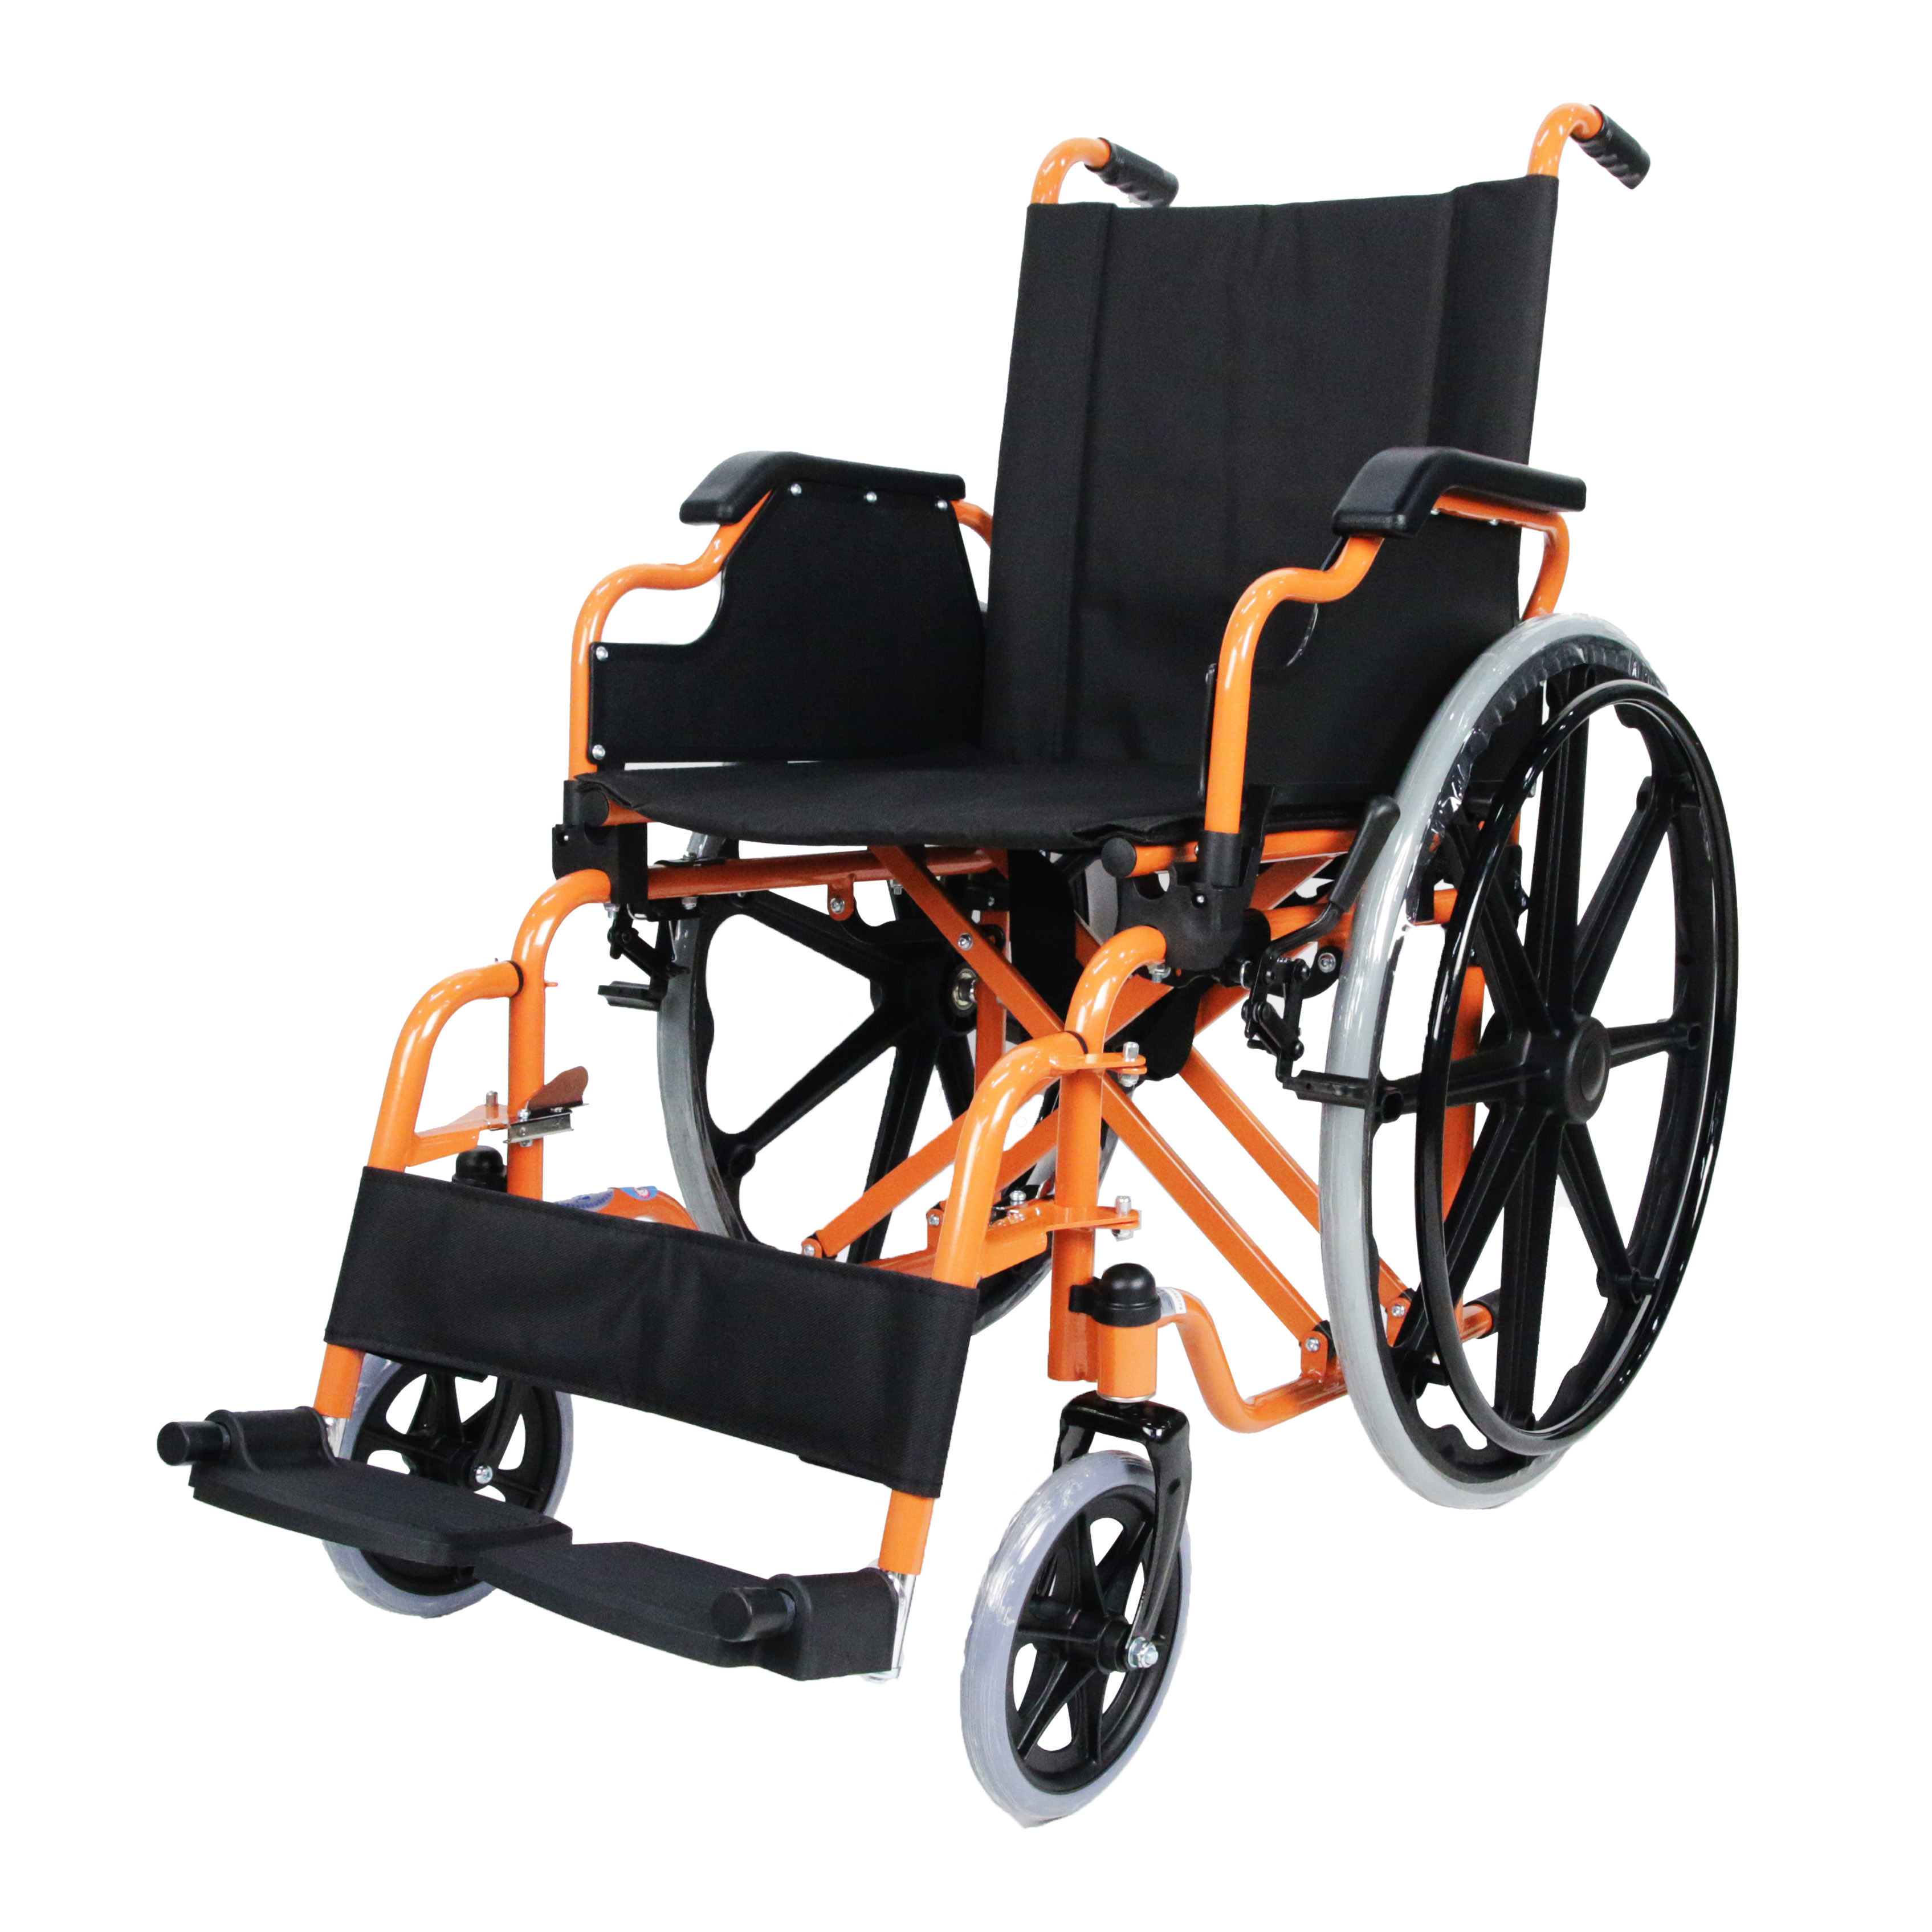 Fauteuil roulant pliant avec cadre en acier revêtu de puissance, accoudoir rabattable/repose-jambes amovible, fauteuil roulant standard, nouvel arrivage